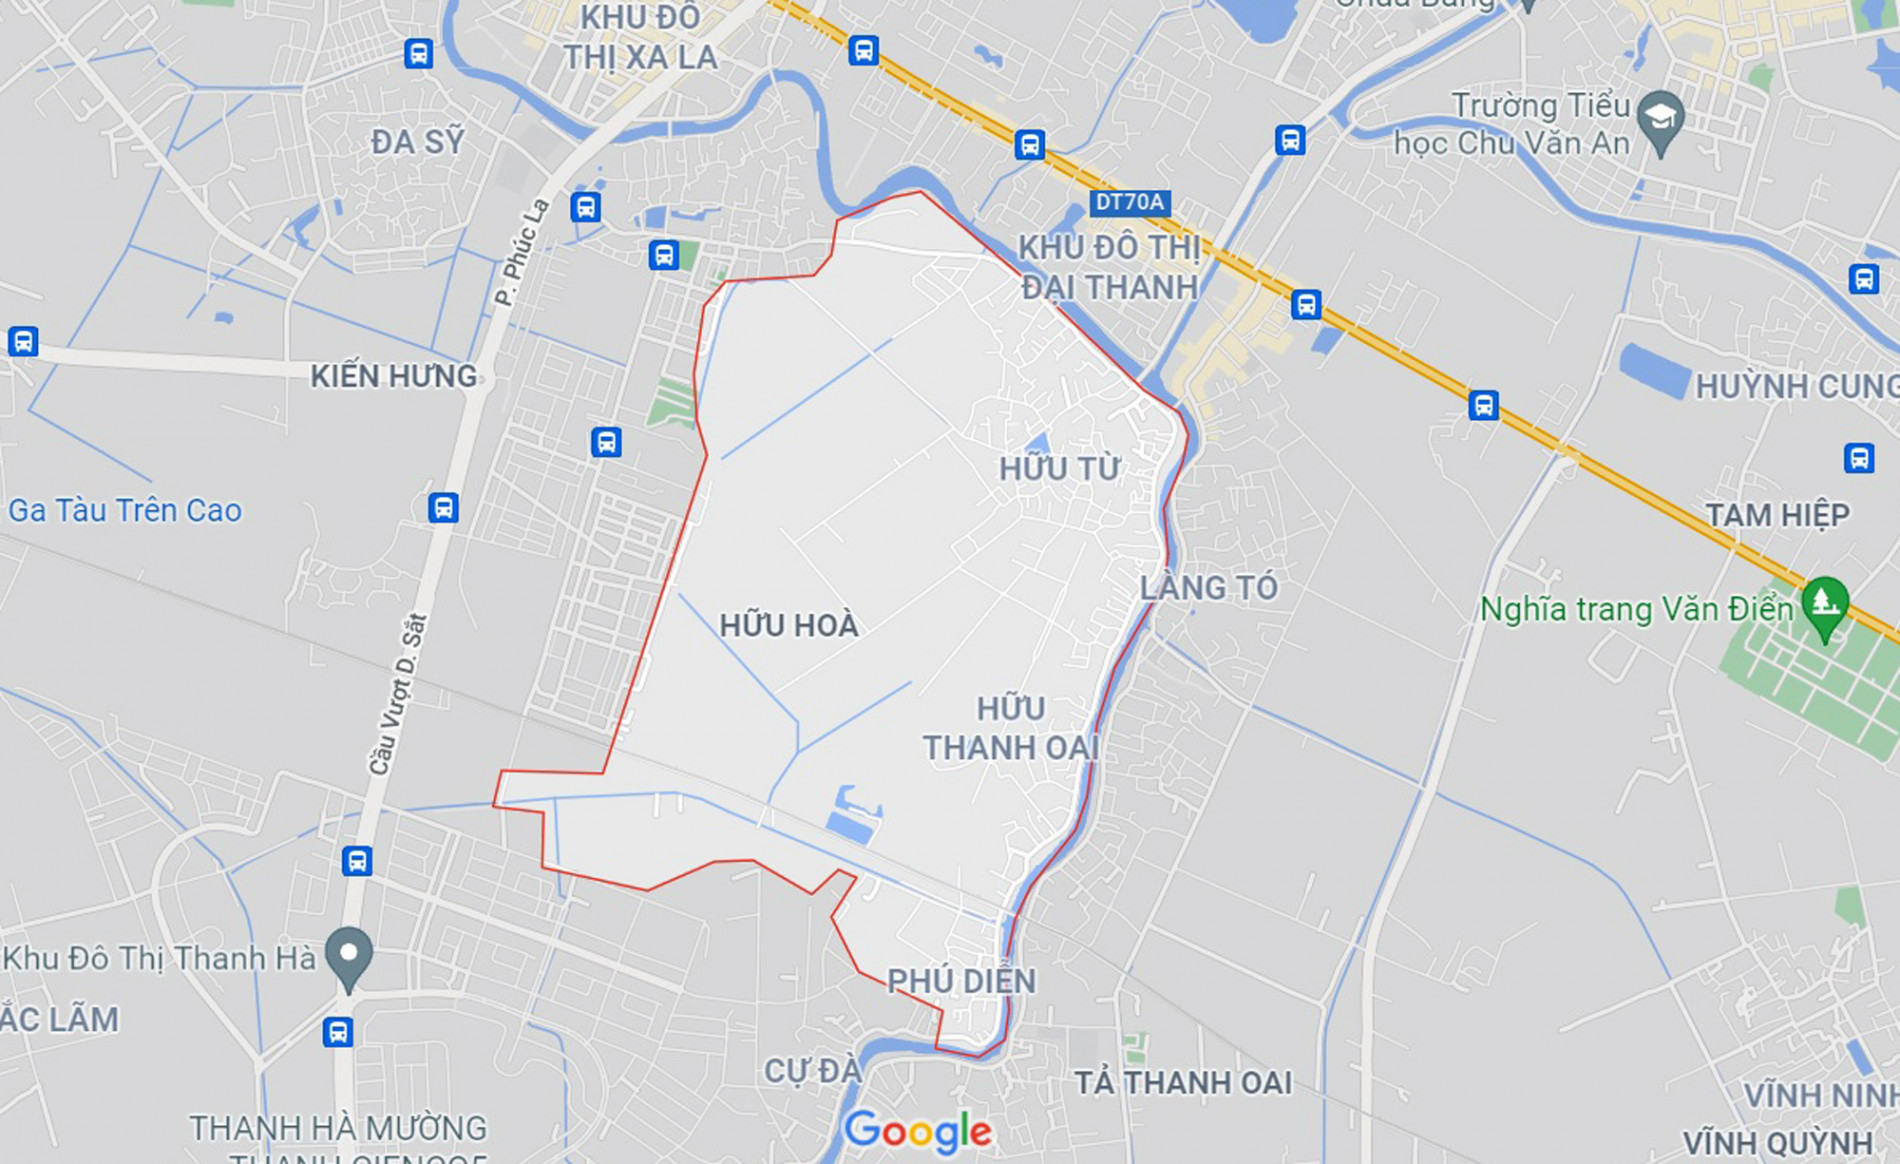 Những khu đất sắp thu hồi để mở đường ở xã Hữu Hòa, Thanh Trì, Hà Nội (phần 2) - Ảnh 1.